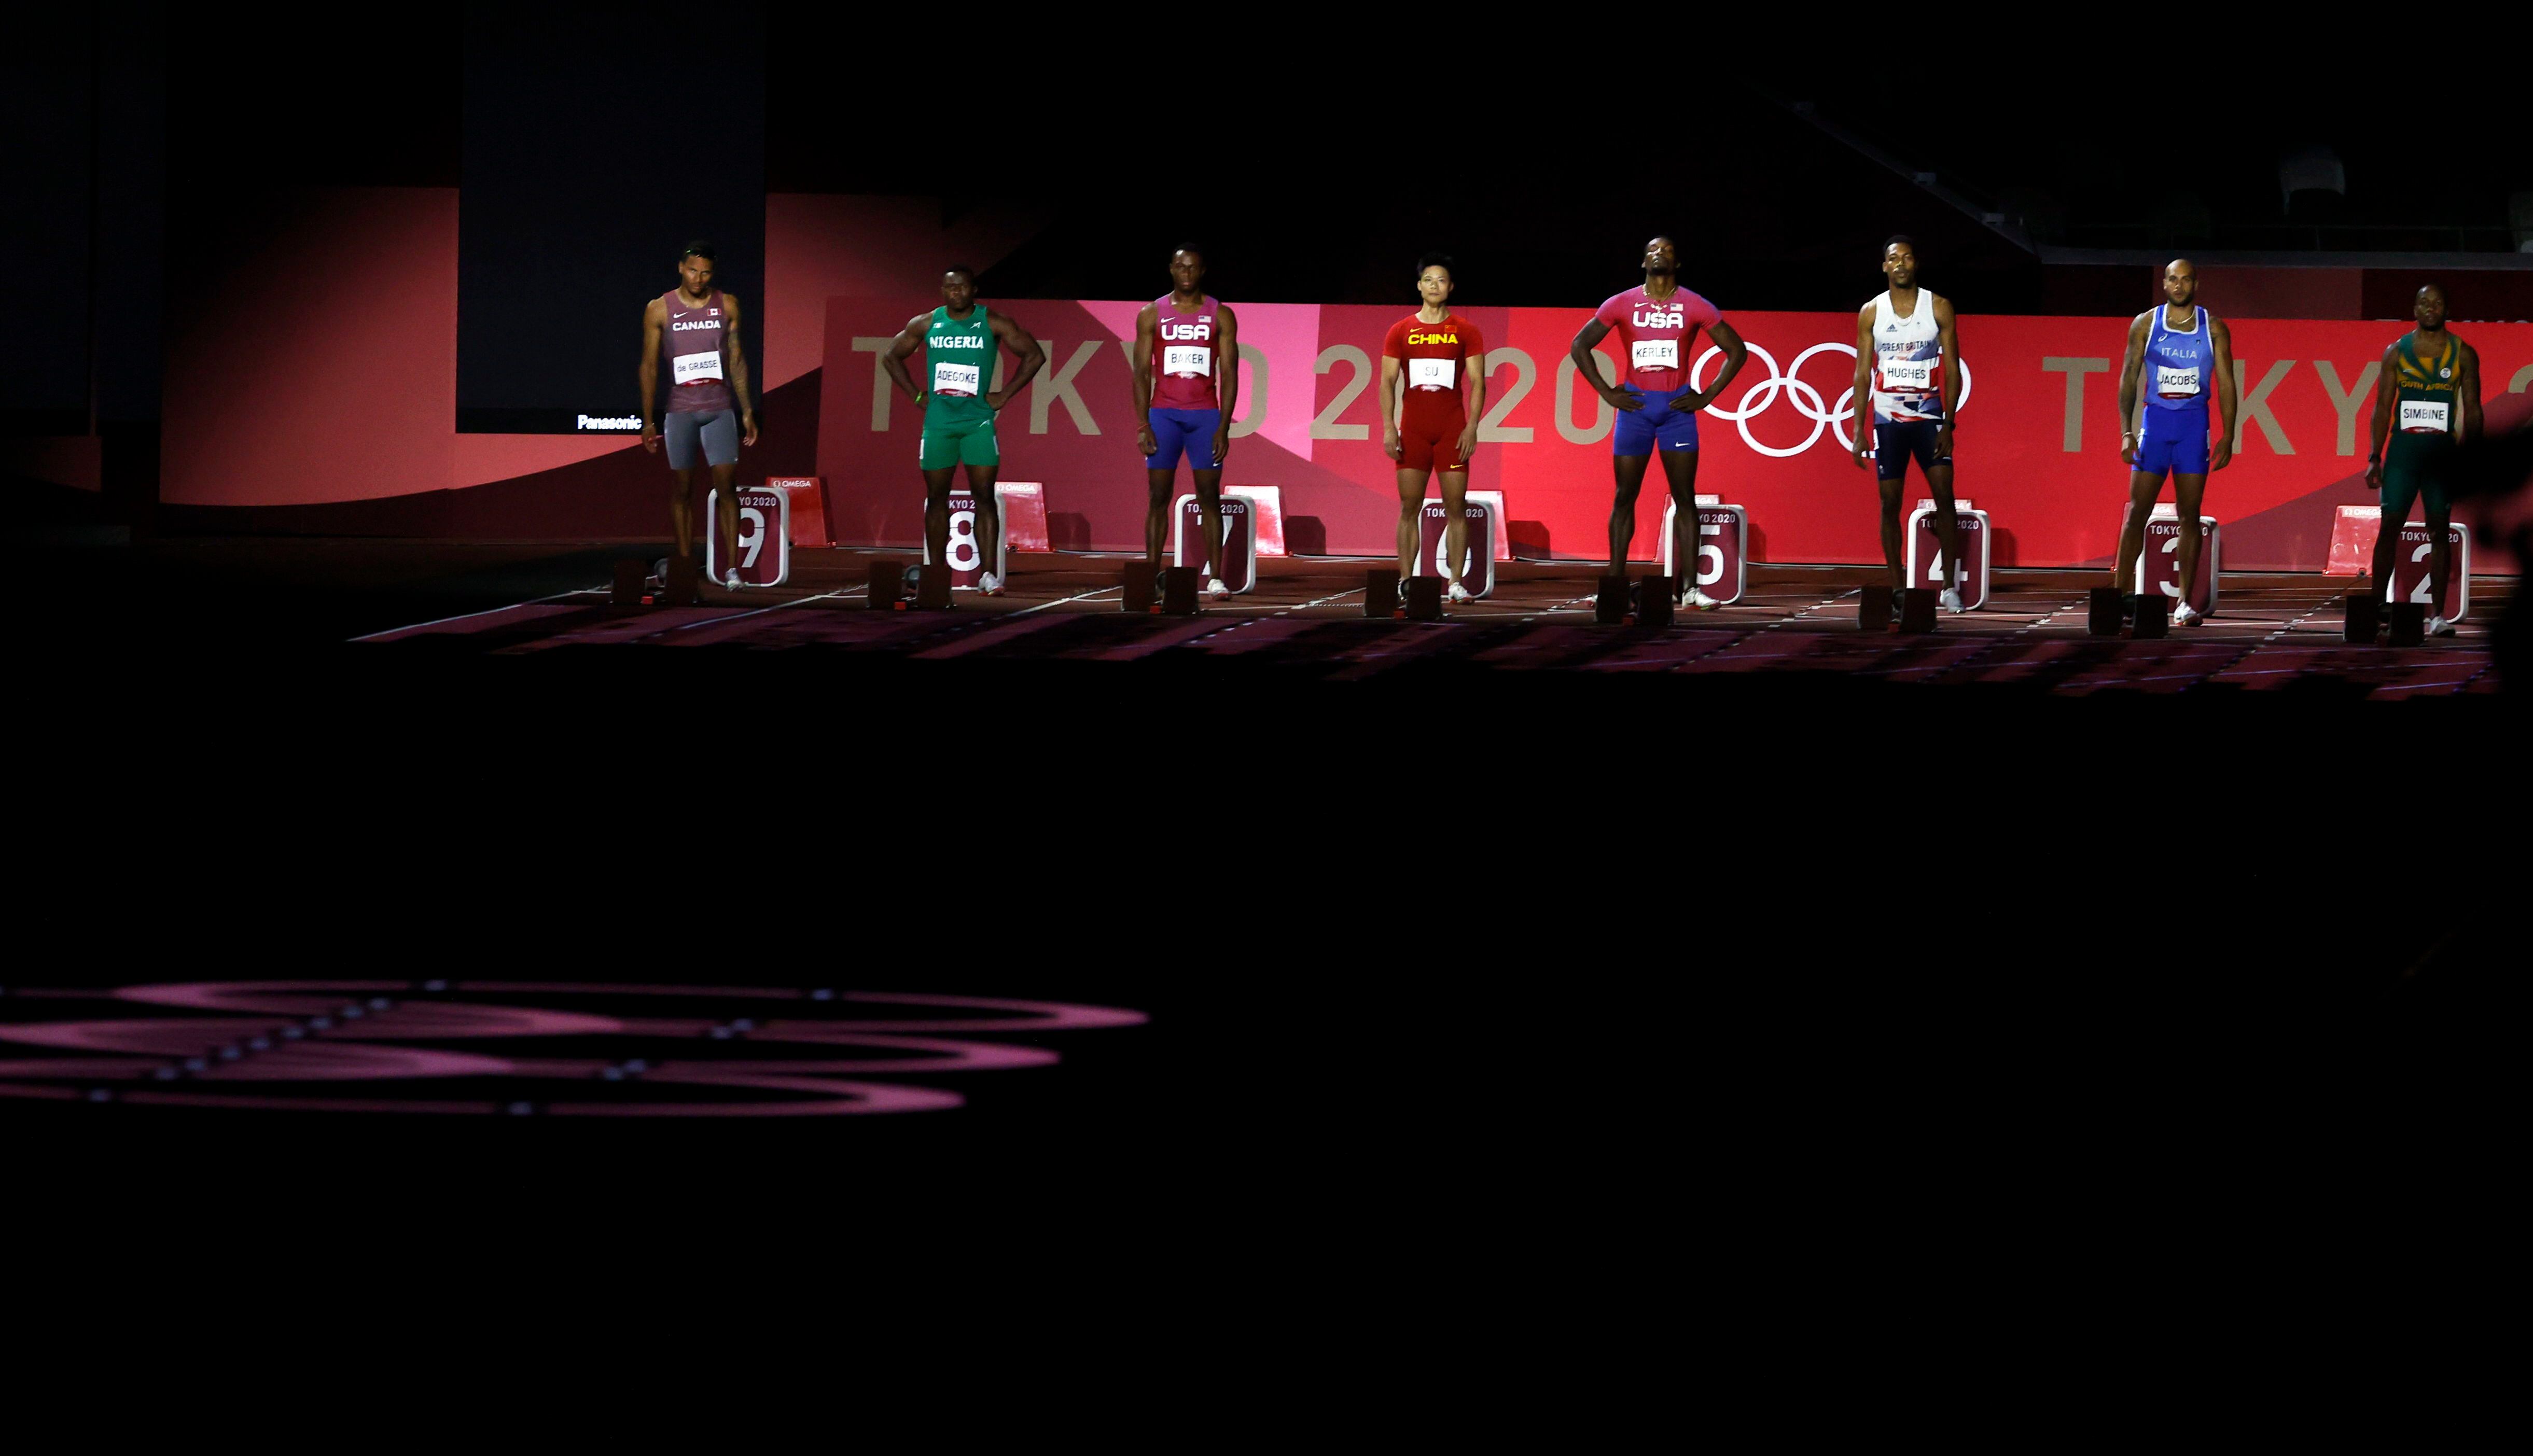 Os atletas alinhados em suas marcas antes de correr a final dos 100m no Estádio Olímpico de Tóquio.